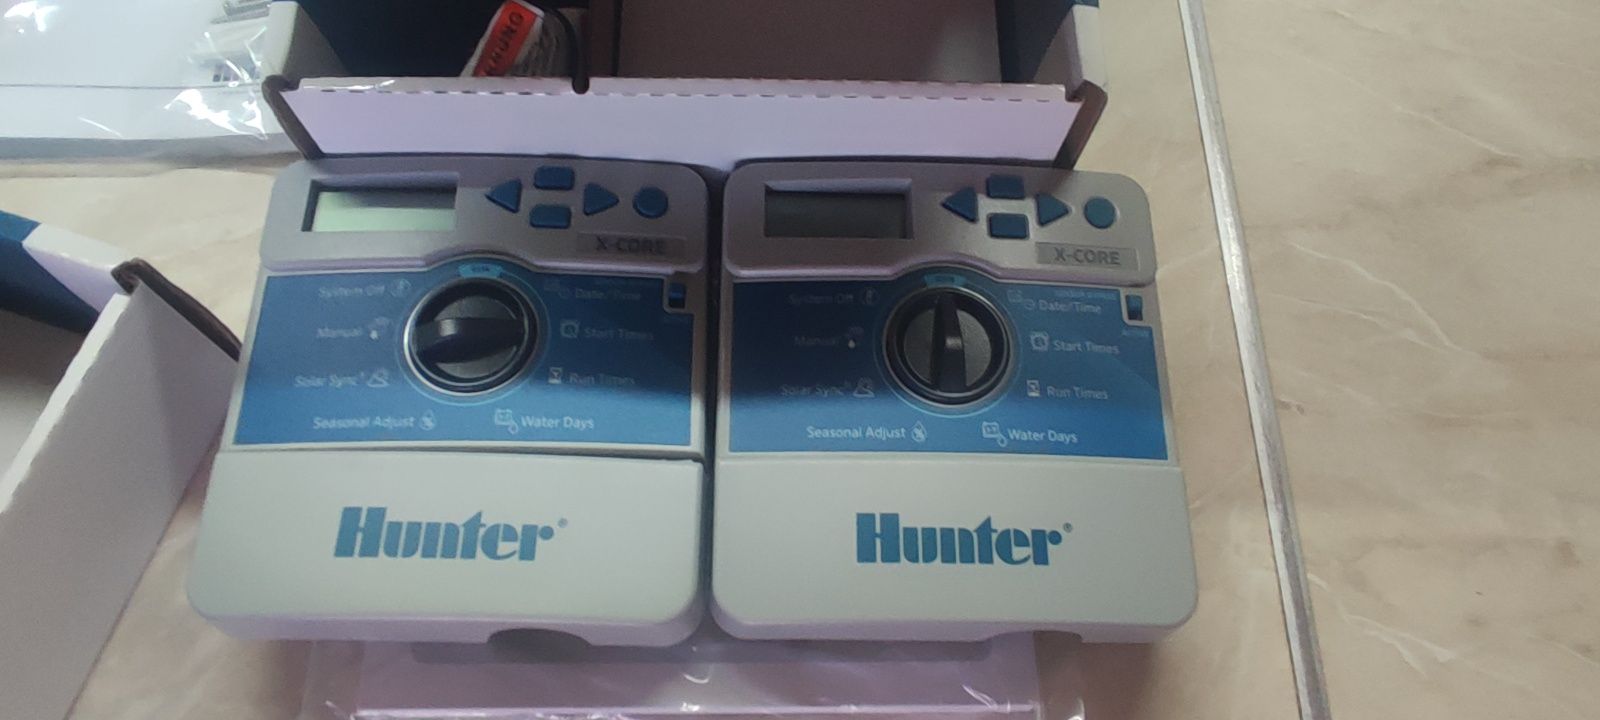 Контполер поливу Хантер Hunter x-core 4-8 зон новий